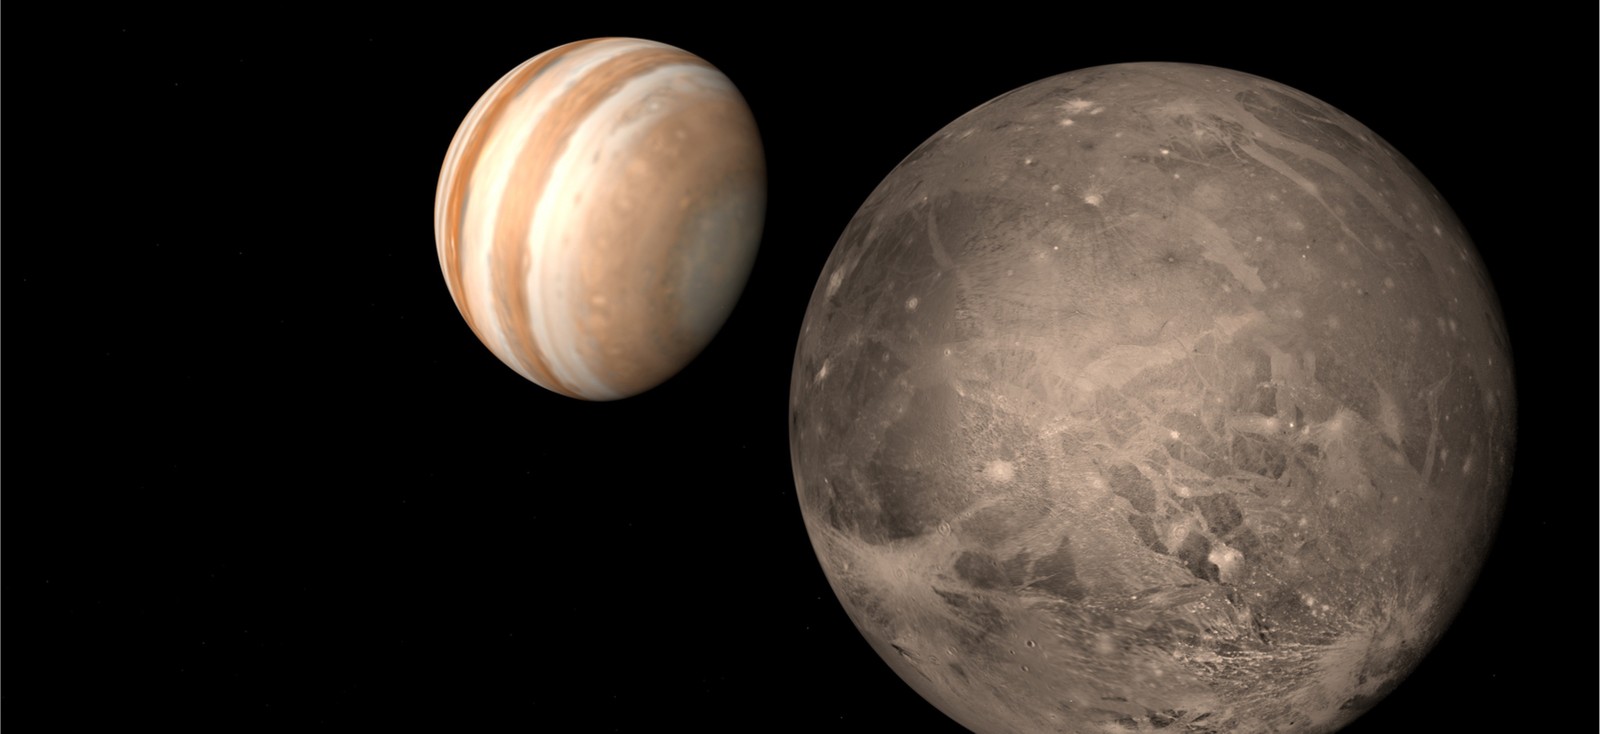 Sonda Juno dostrzega coś ciekawego na powierzchni Ganimedesa. Co skrywa największy księżyc w Układzie Słonecznym?